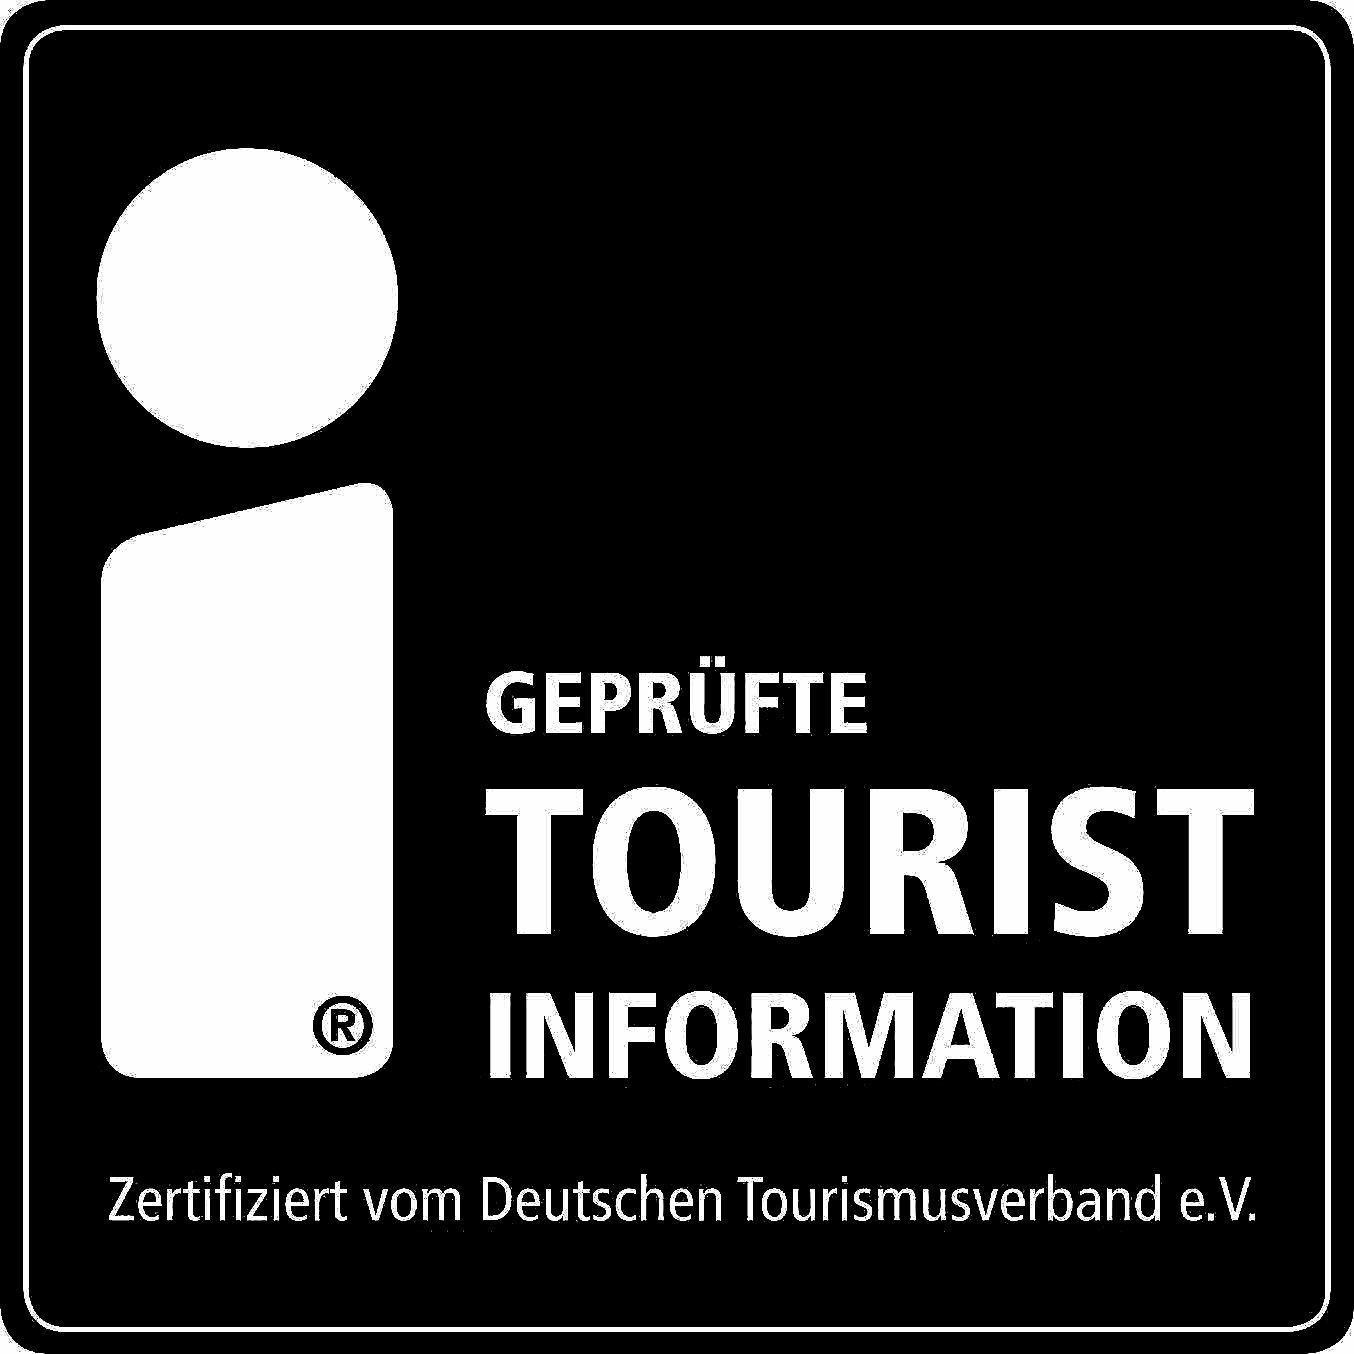 Marke Geprüfte Tourist Information